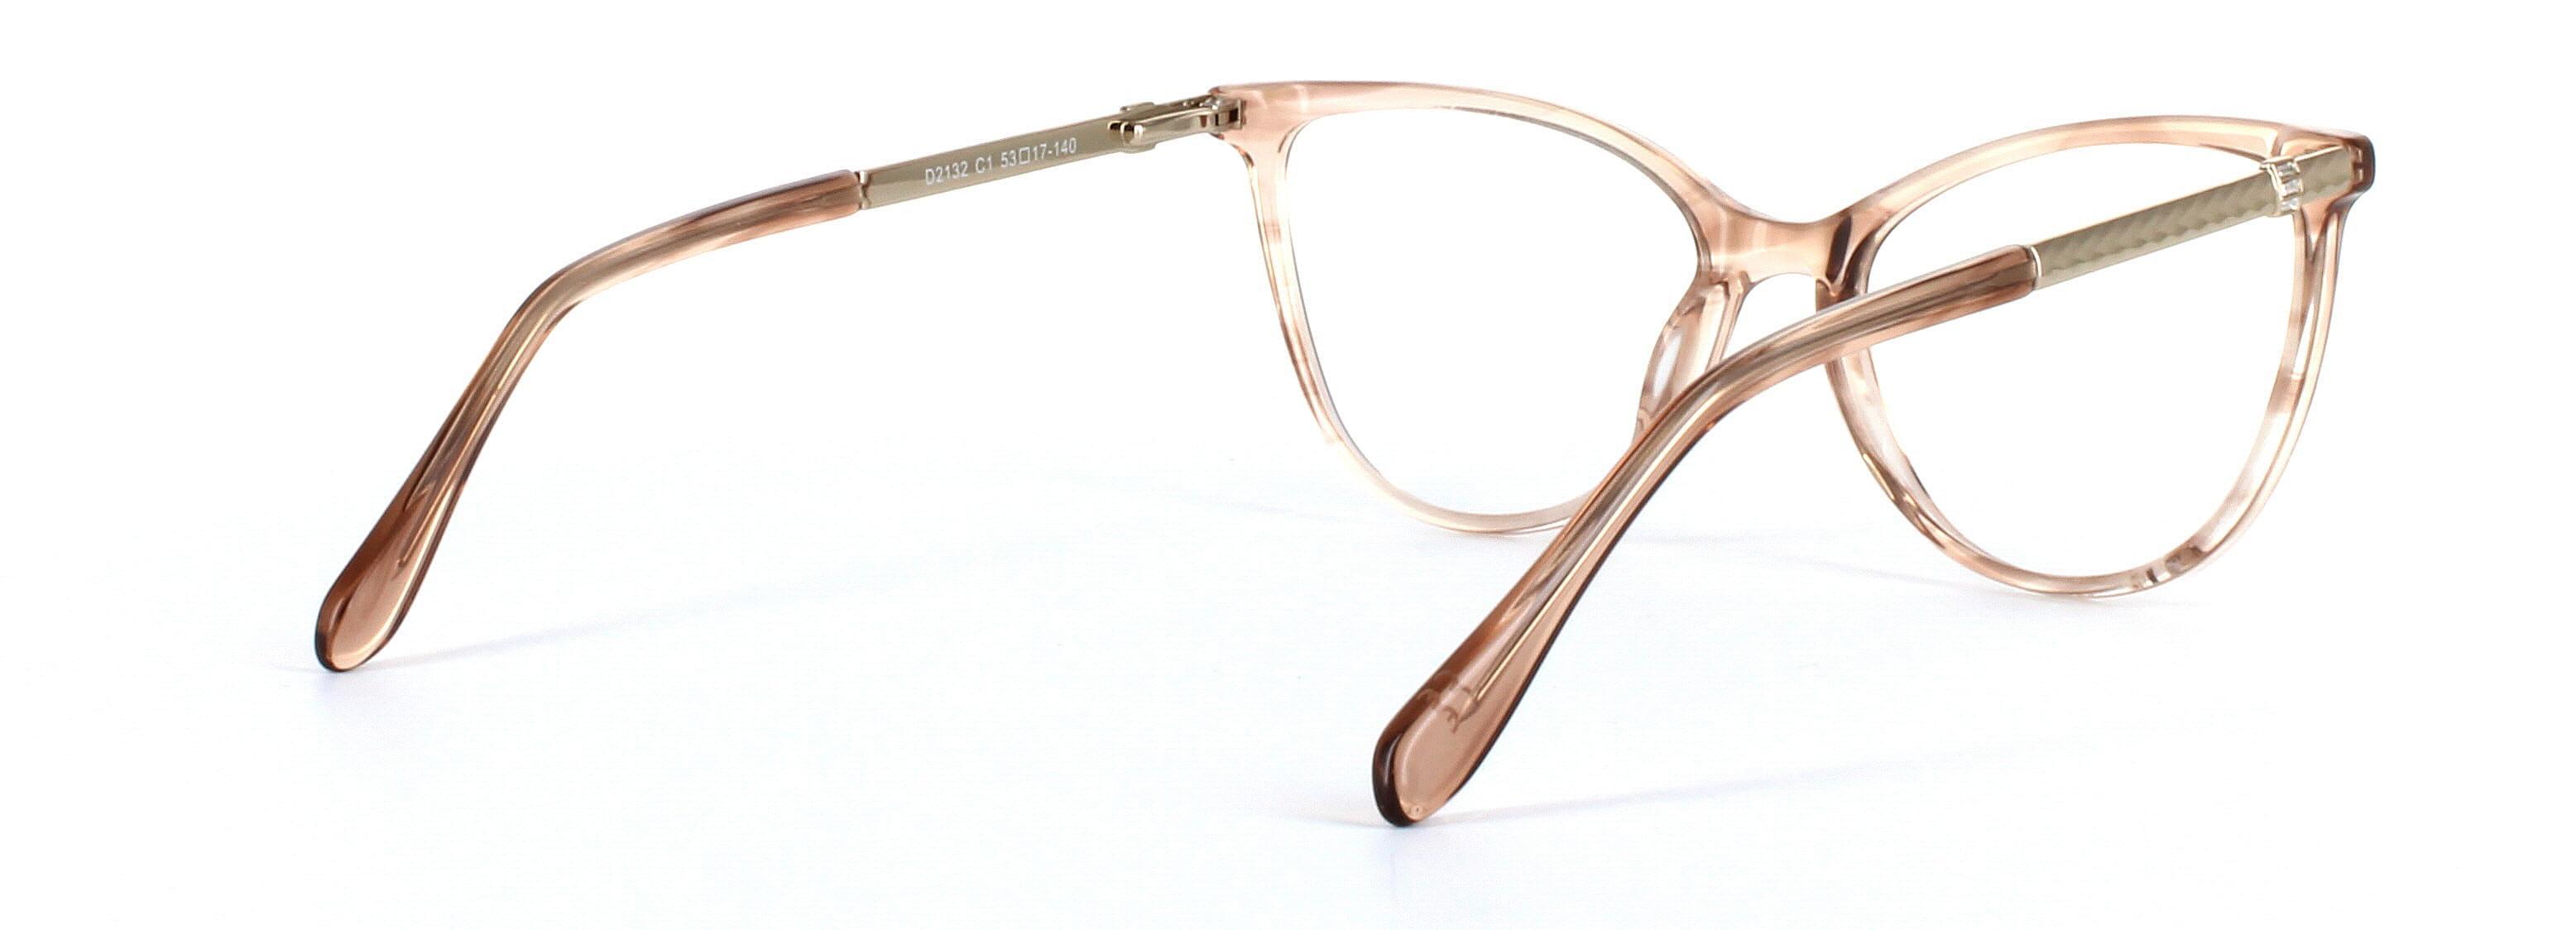 Callie Brown Crystal Full Rim Cat Eye Acetate Glasses - Image View 4